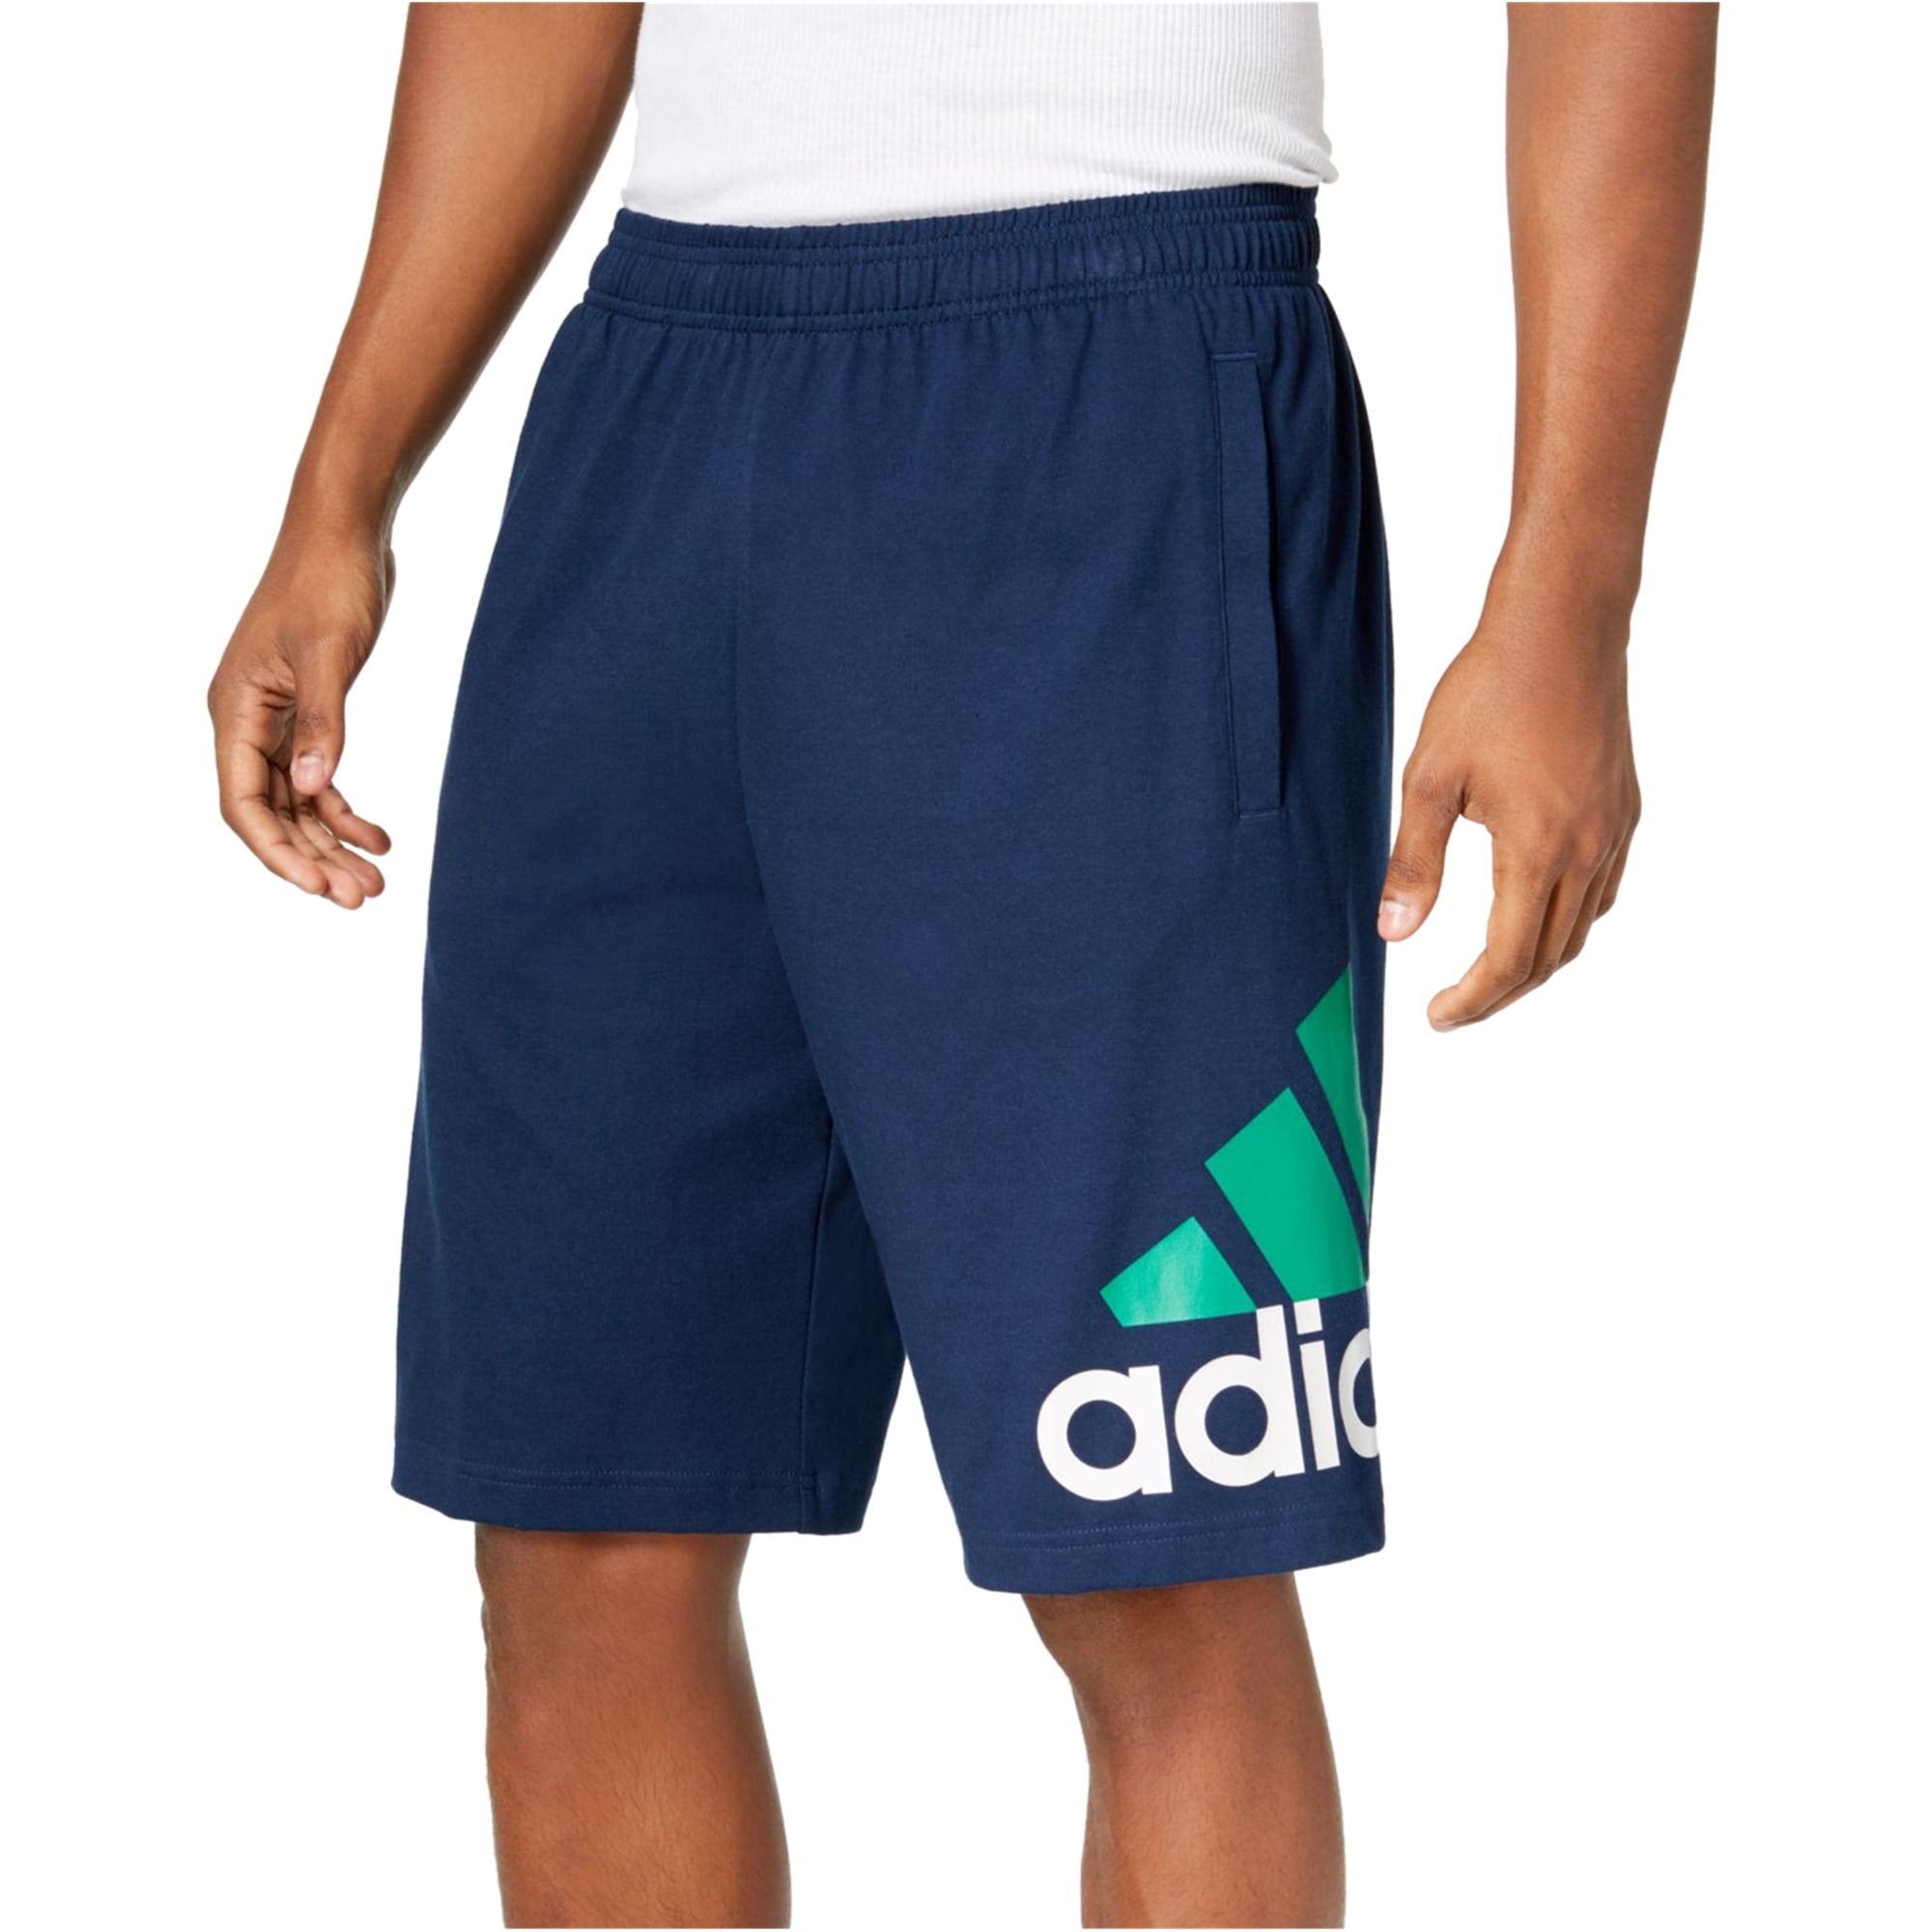 adidas walking shorts